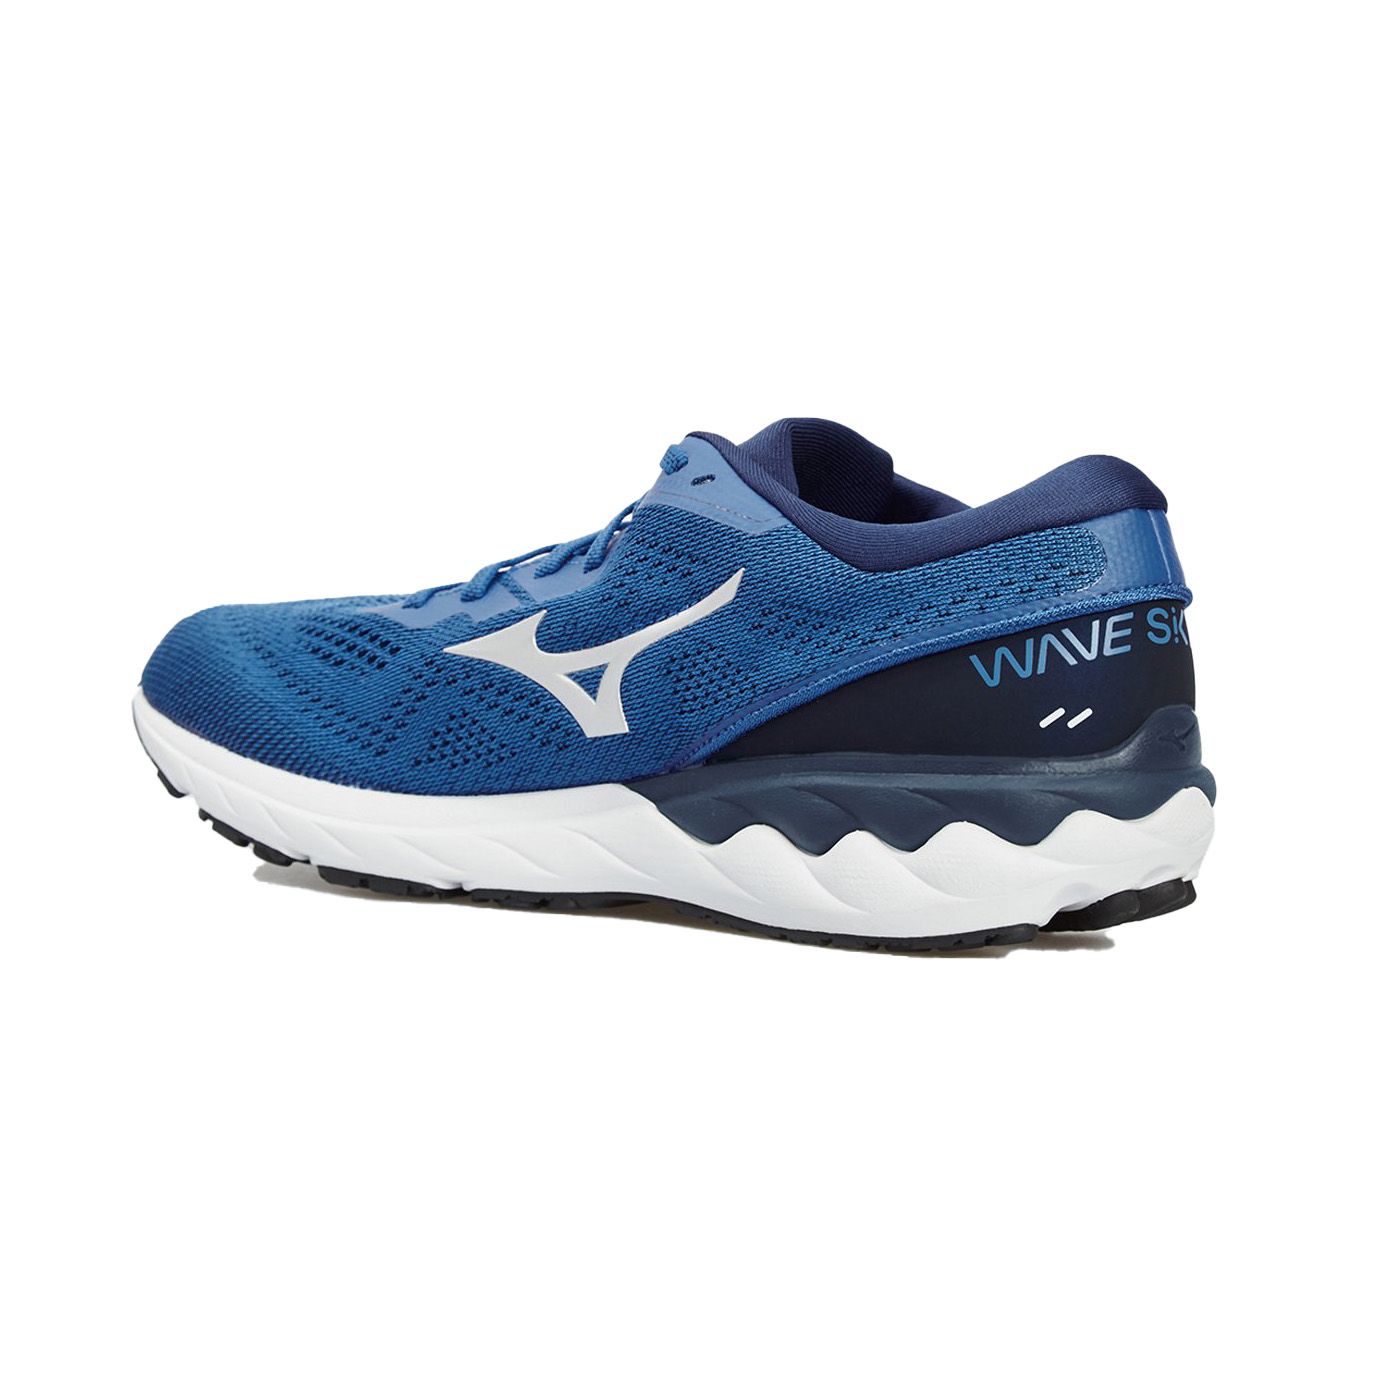 کفش مخصوص دویدن مردانه میزانو مدل WAVE SKYRISE 2 کد J1GC210904 -  - 3